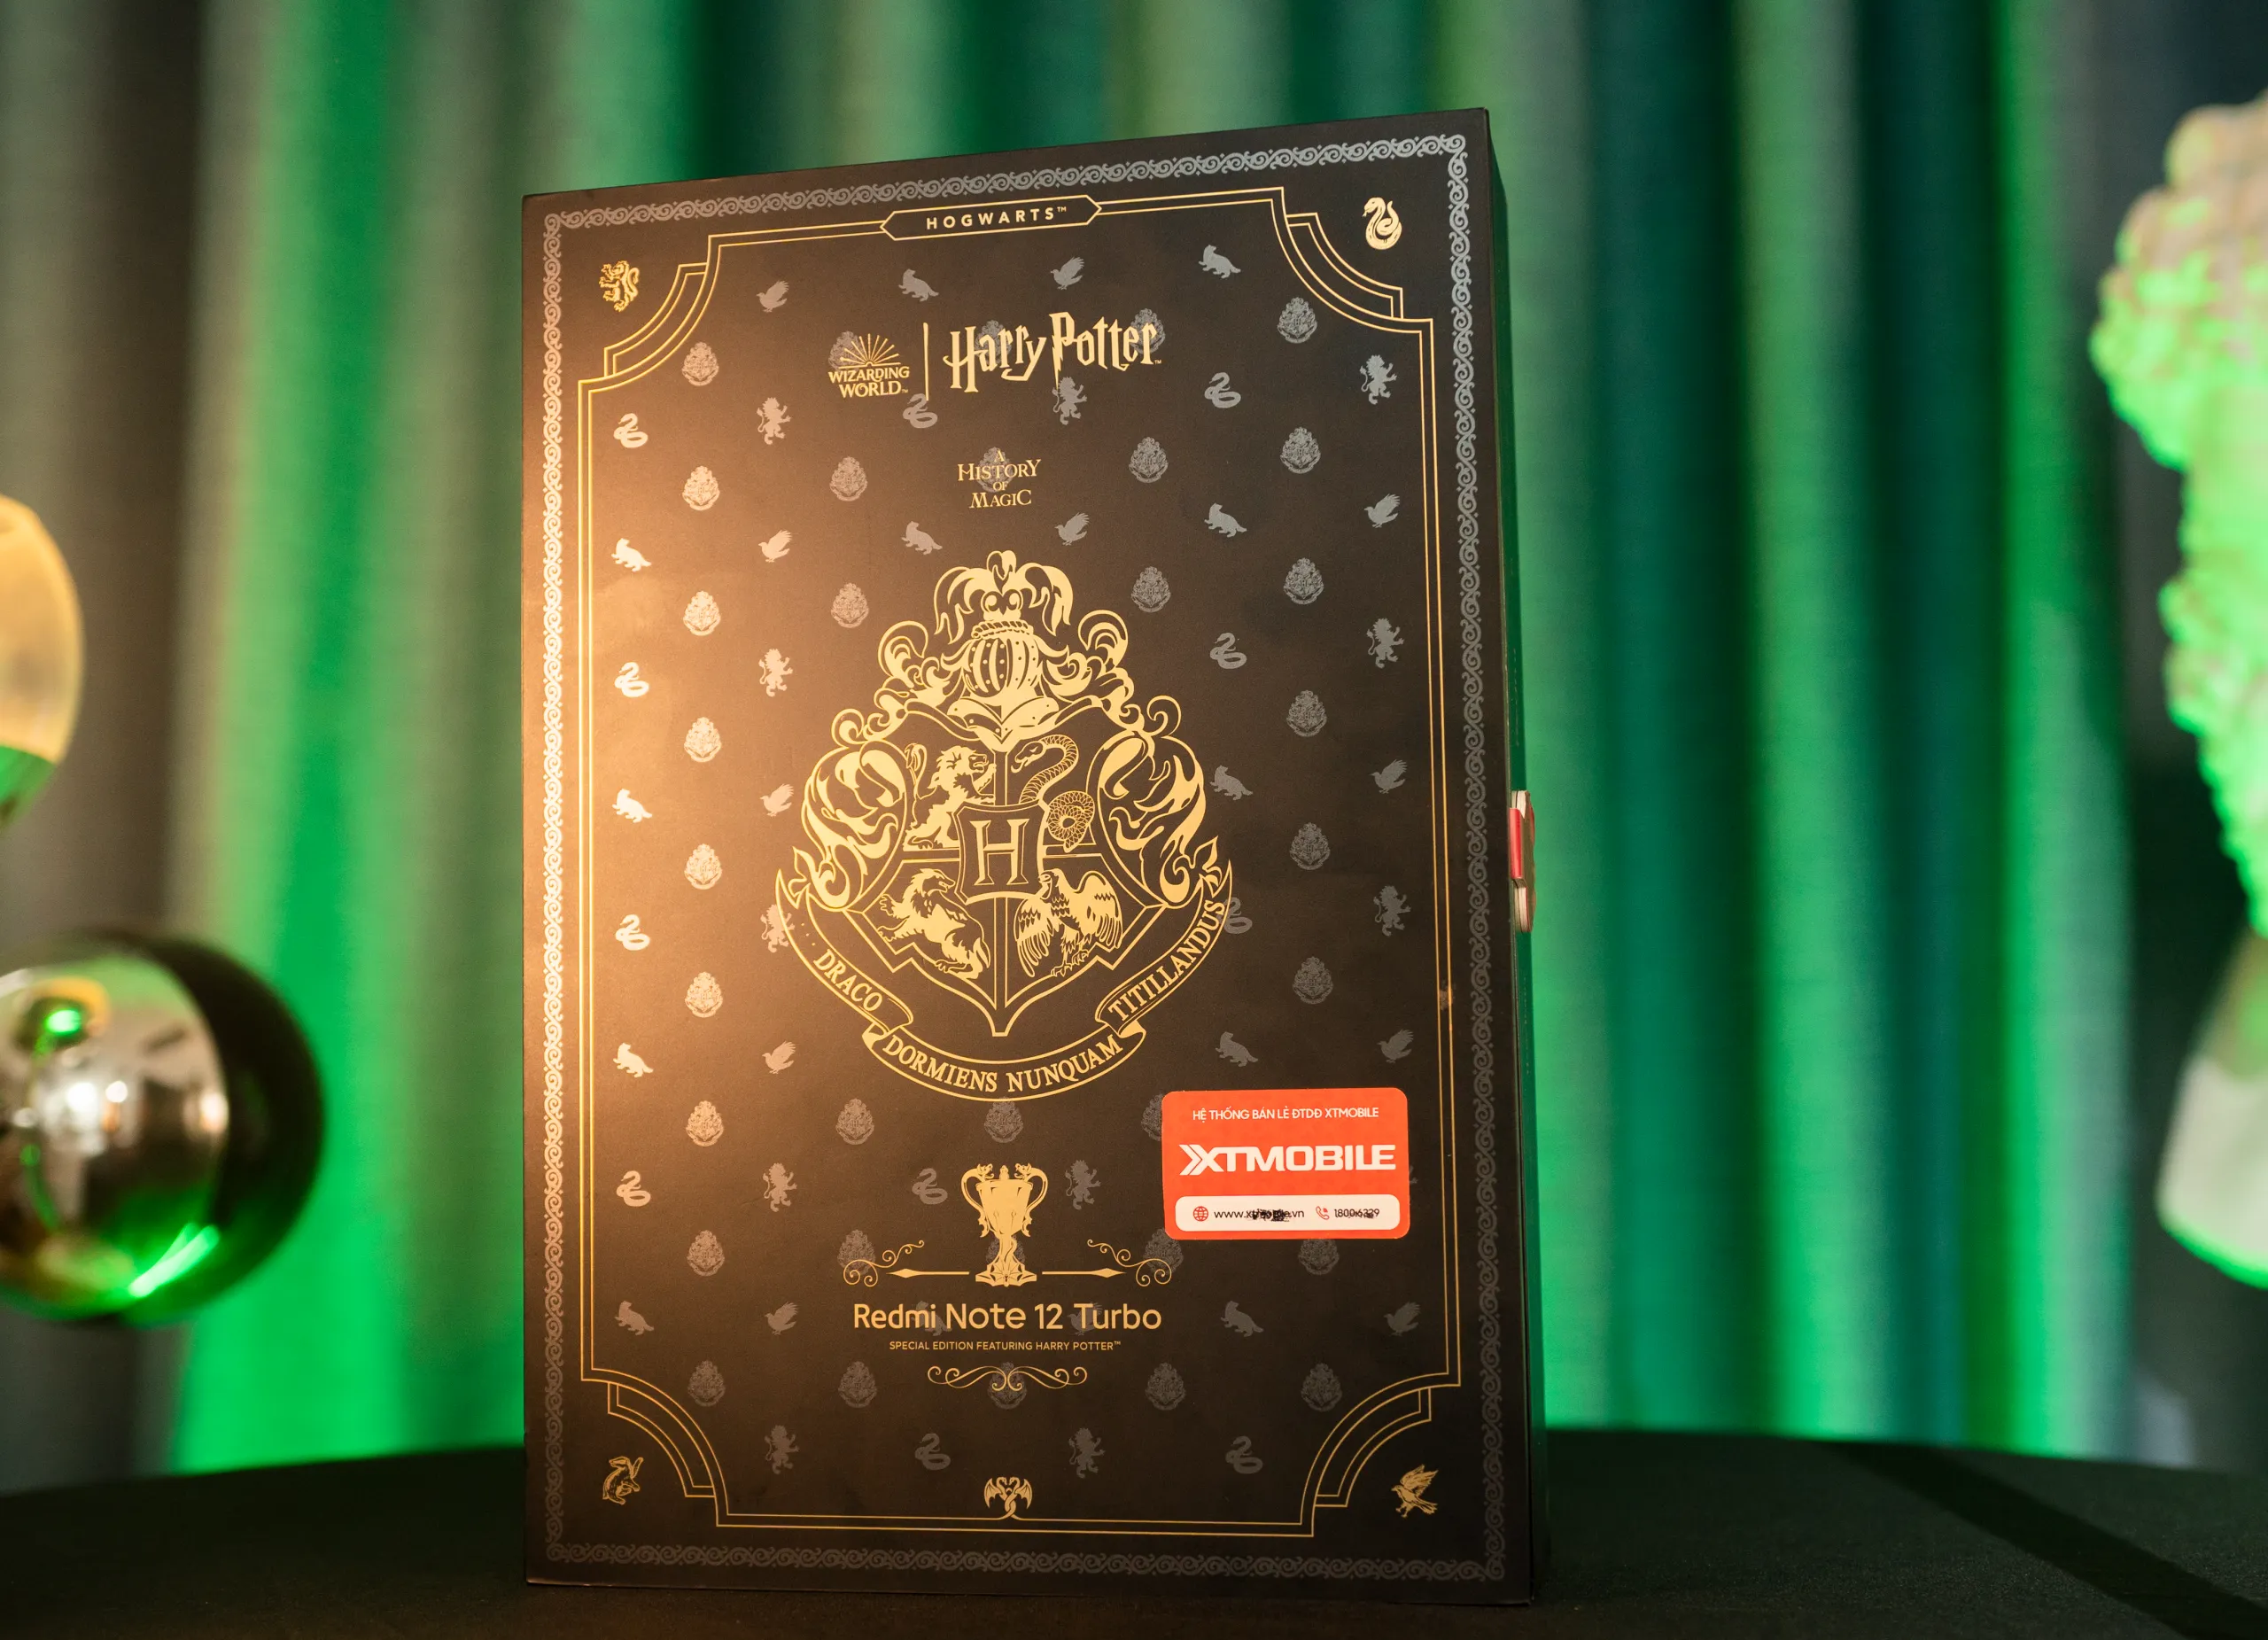 Trên tay Redmi Note 12 Turbo phiên bản Harry Potter, món quà dành cho tín đồ phép thuật